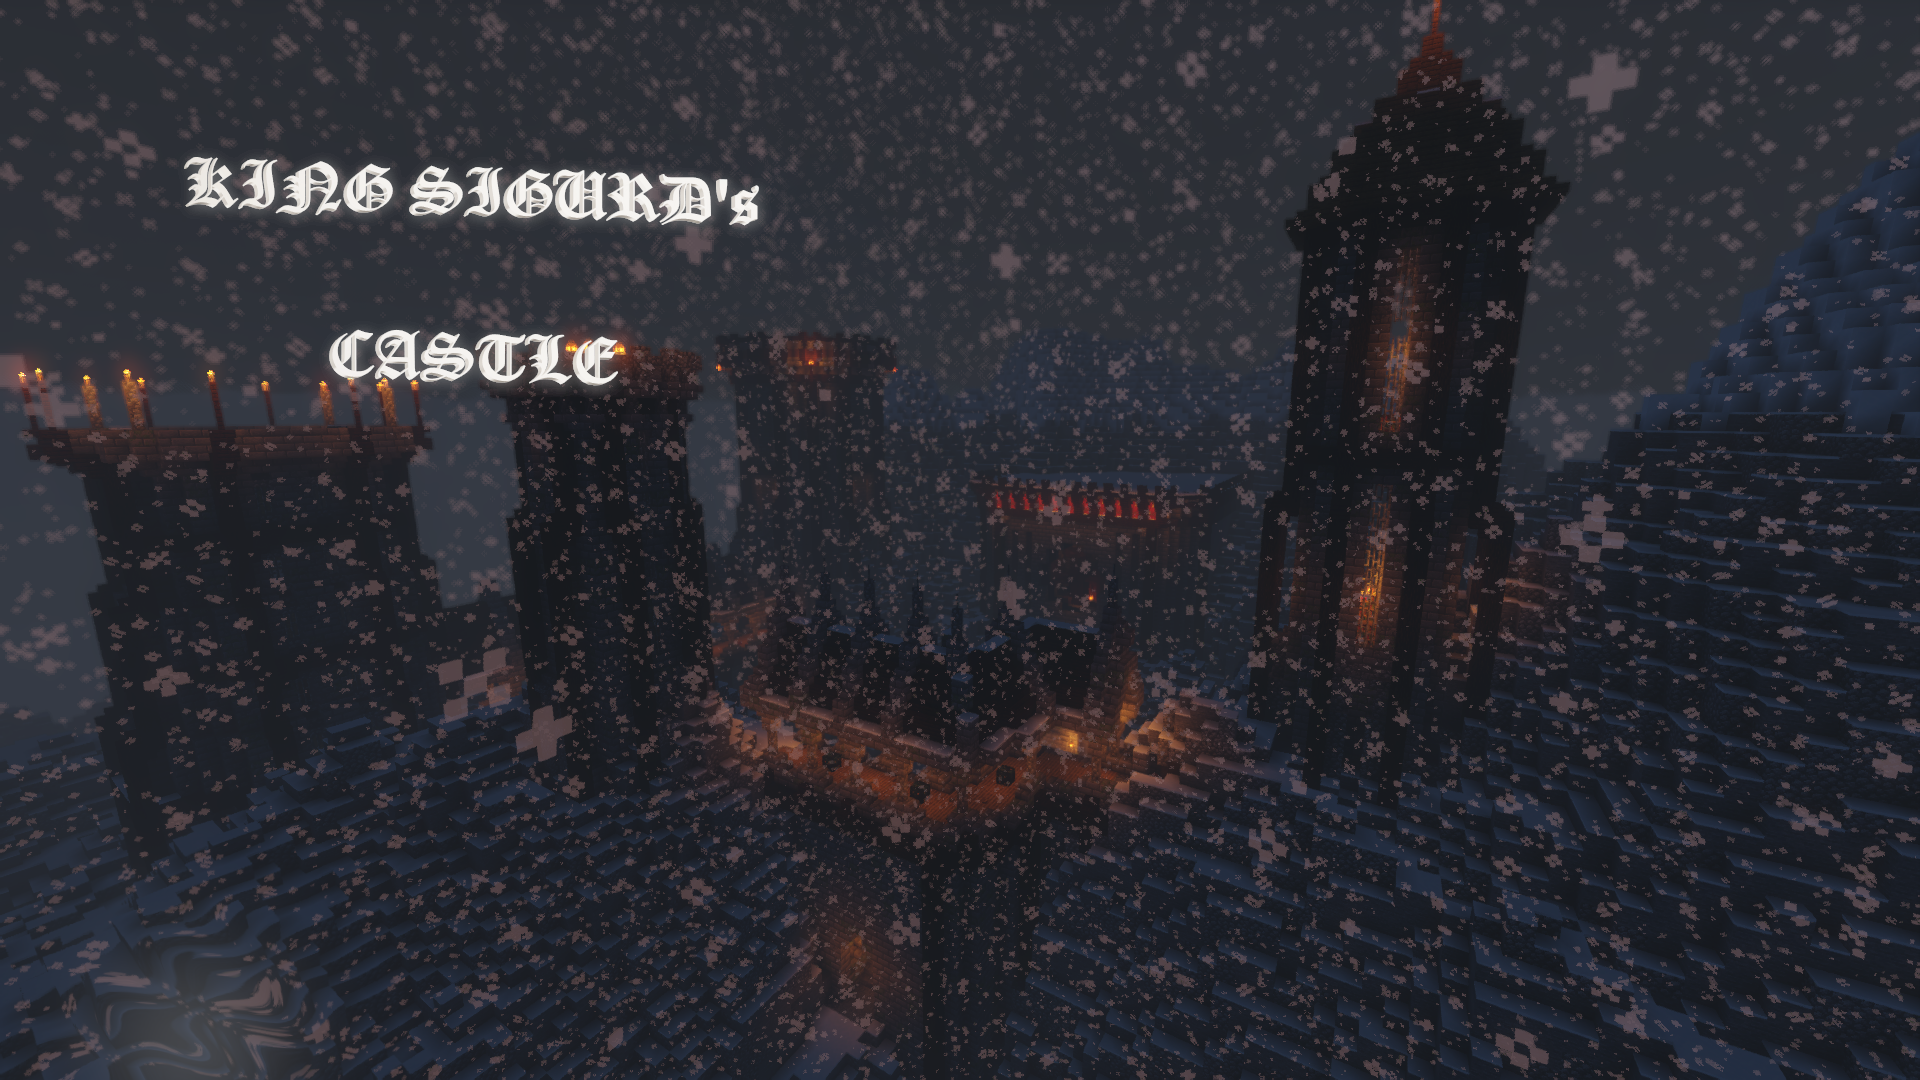 Download King Sigurd's Castle for Minecraft 1.14.4